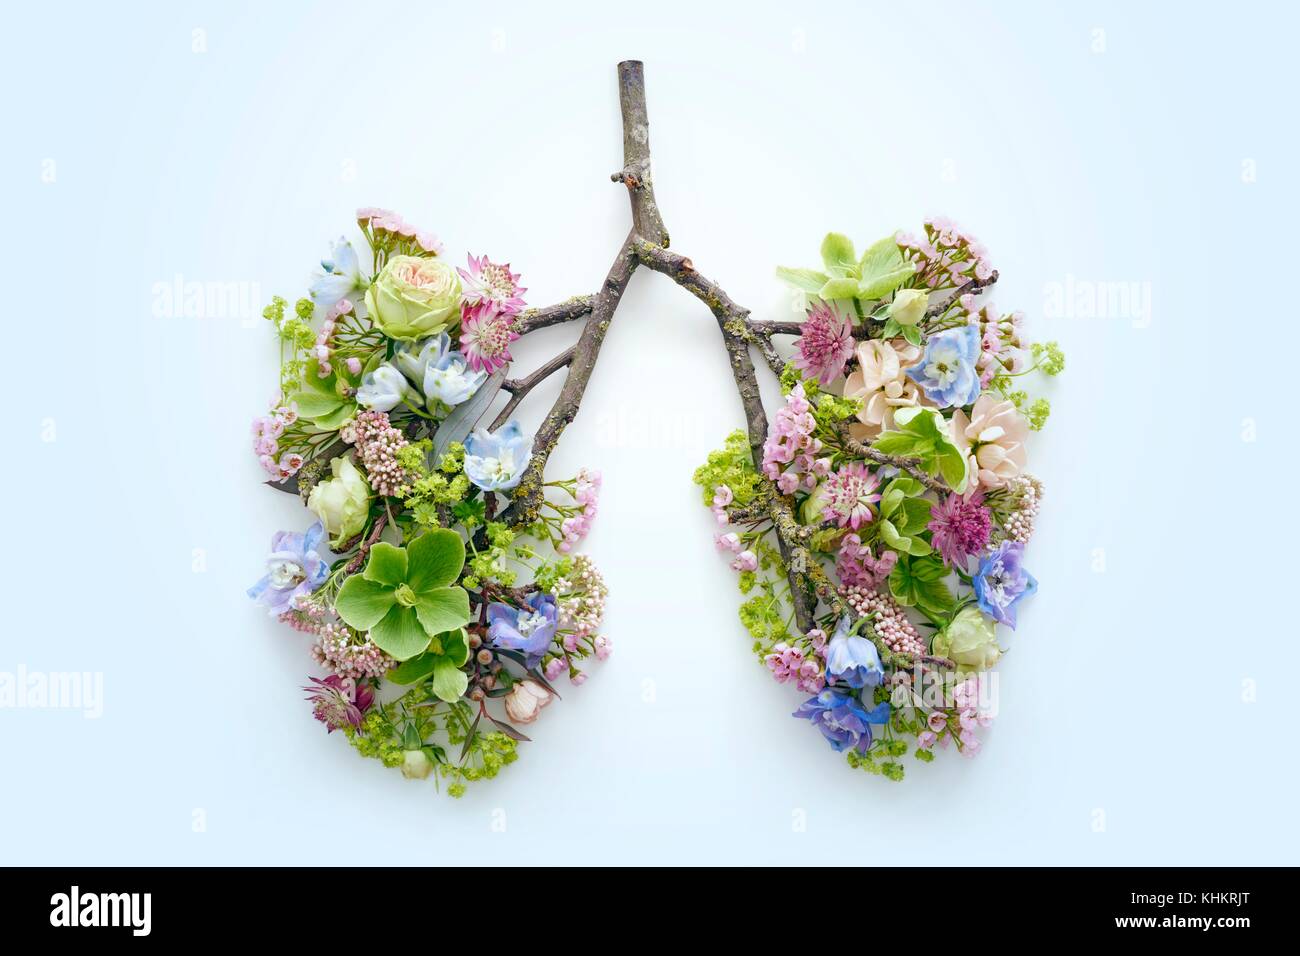 Las flores de la primavera que representa los pulmones, Foto de estudio conceptual. Foto de stock